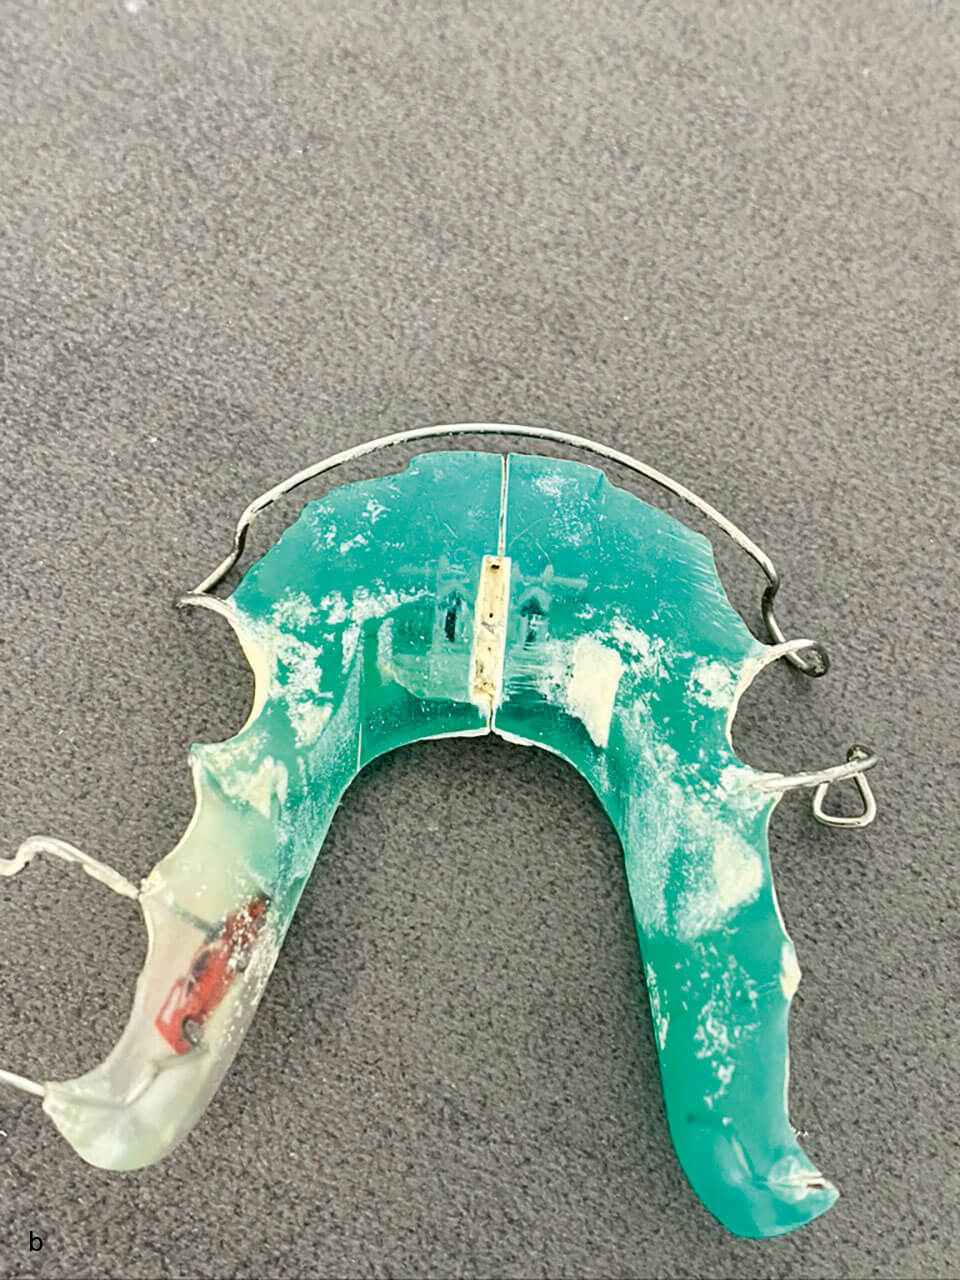 Abb. 3b: Stark verschmutze Apparatur – Gerade an unter sich gehenden Bereichen ist eine optimale Reinigung seitens des Patienten schwer möglich. Die Stellschraube ist so sehr mit Zahnstein verschmutzt, dass ein Stellen nicht mehr möglich ist.